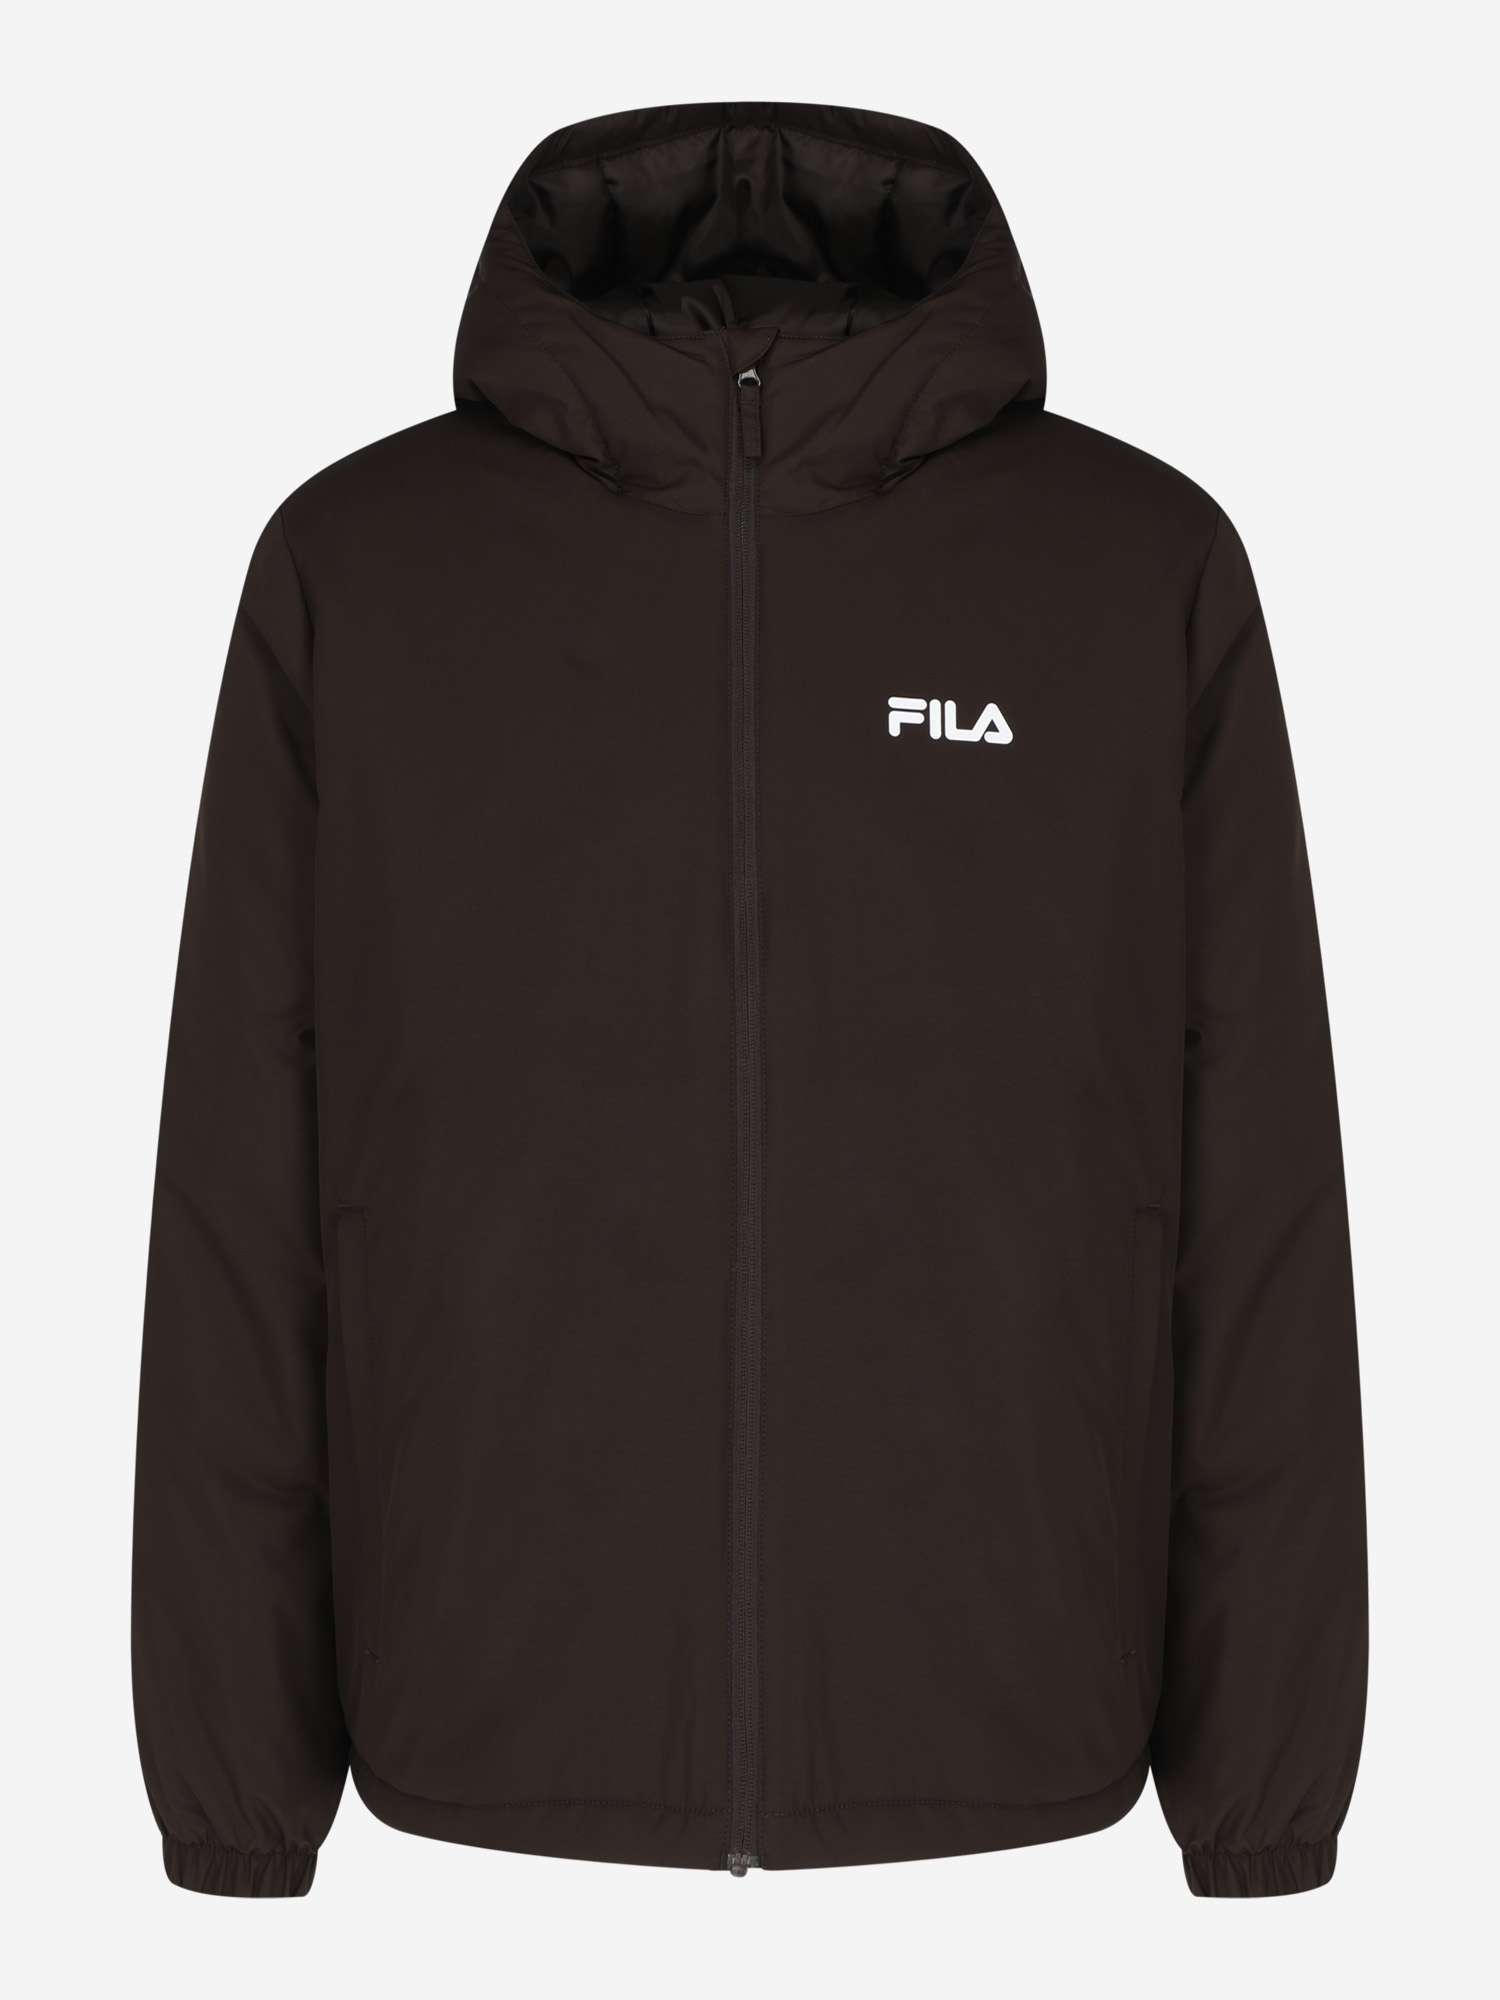 Куртка утепленная мужская FILA Essentials, Коричневый